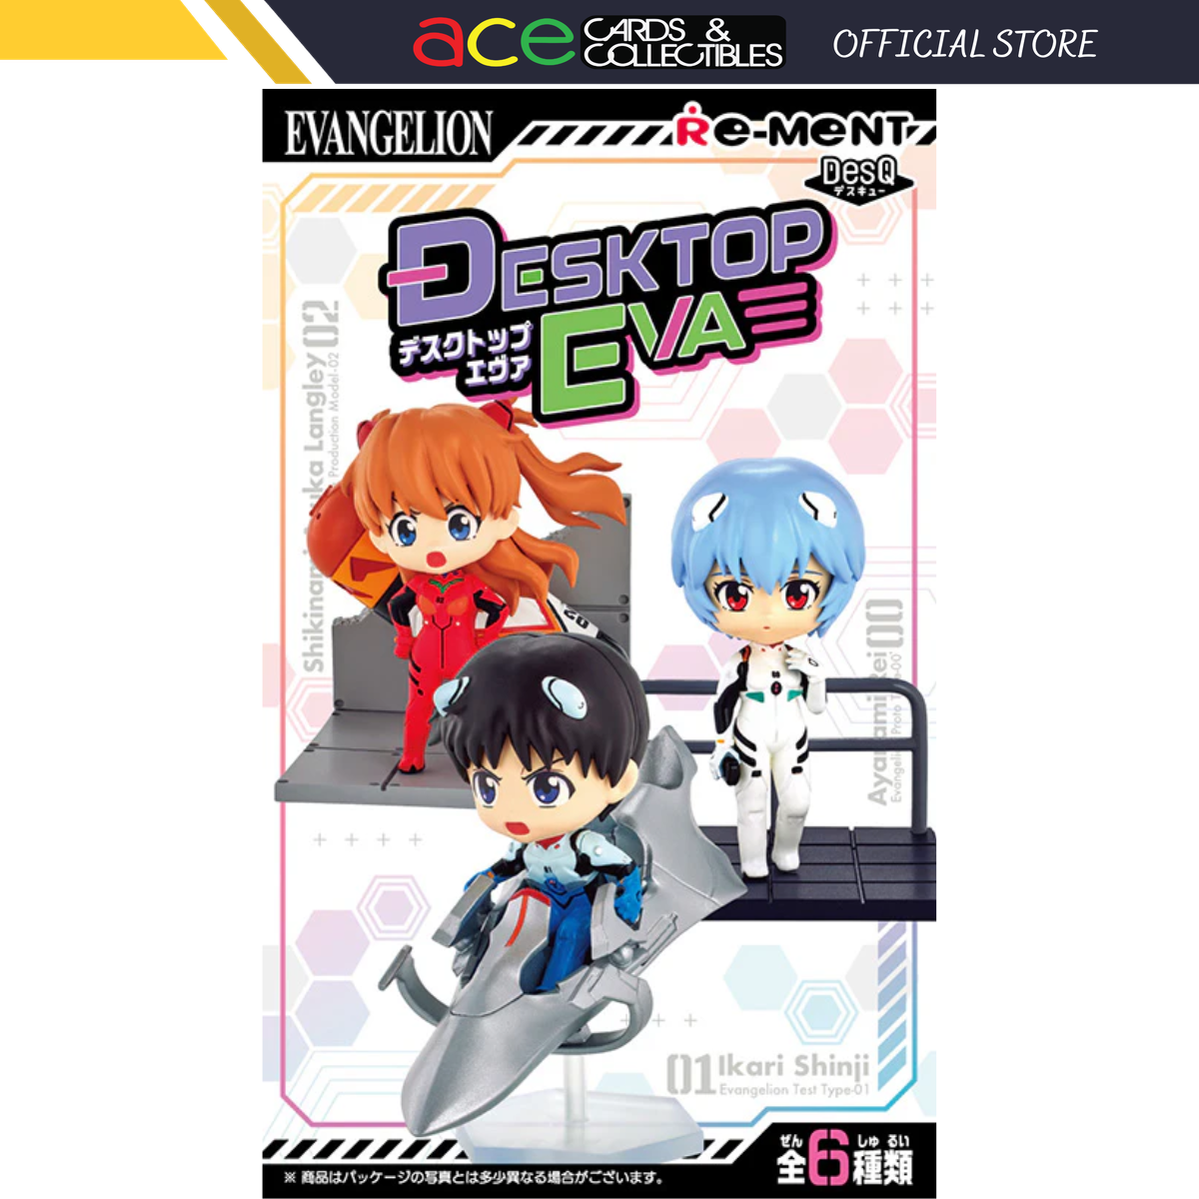 Re-Ment Evangelion Desktop Eva Series-Single Box-Re-Ment-Ace Cards & Collectibles